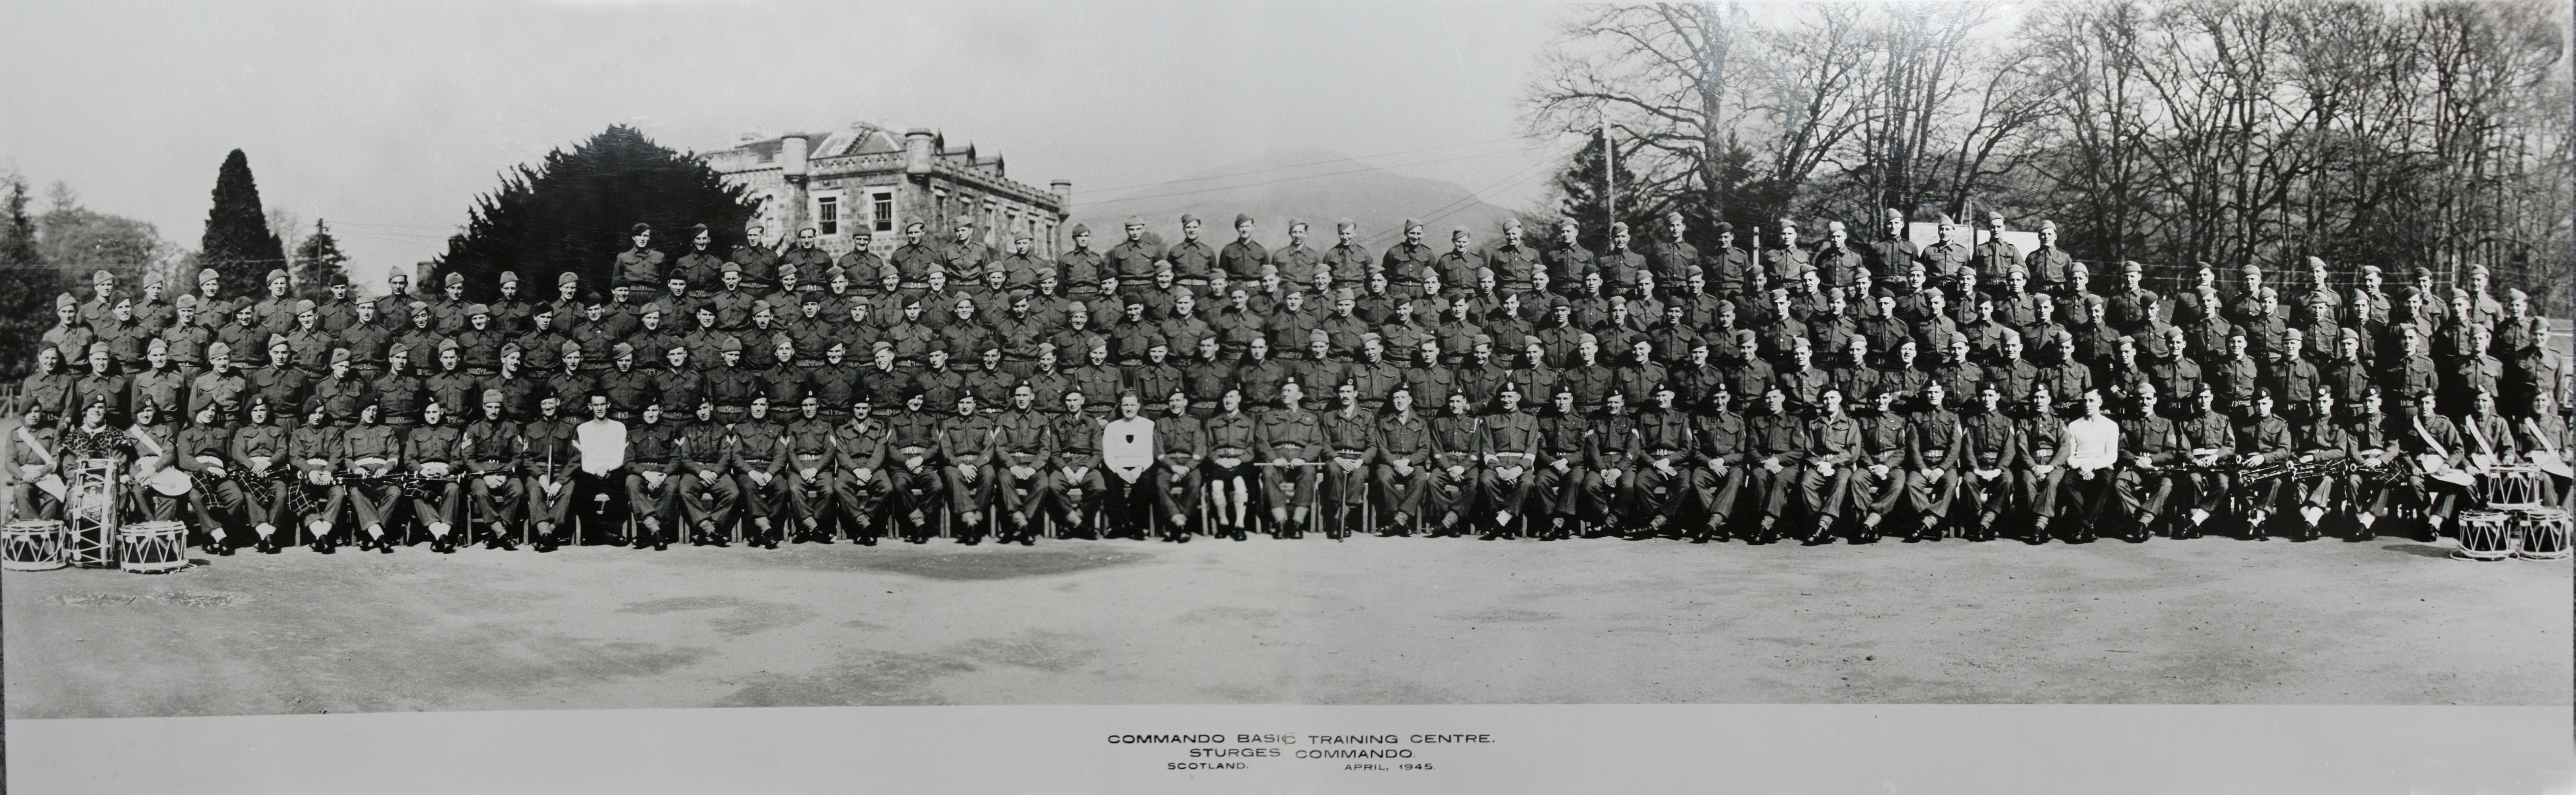 Achnacarry  - Sturges Commando Course April 1945